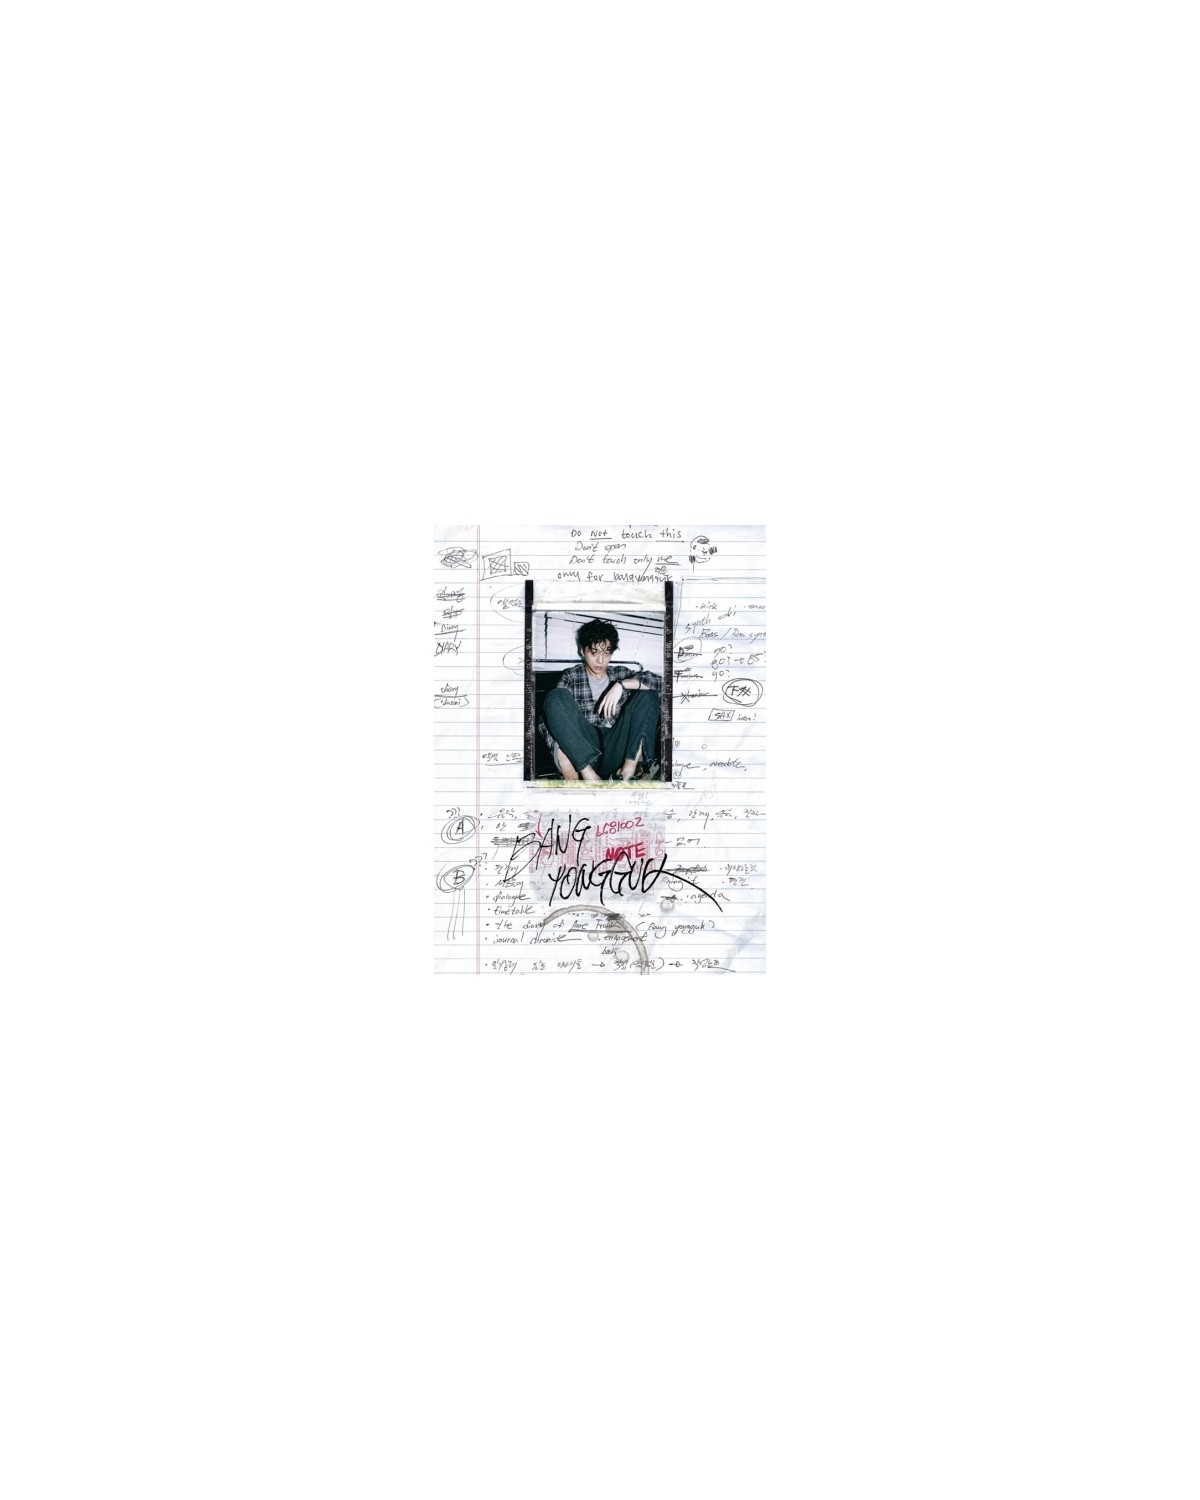 BANG YONG GUK - VOL.1 [BANGYONGGUK] wersja standardowa płyta album bap sklep B.A.P kpop khiphop Poznan